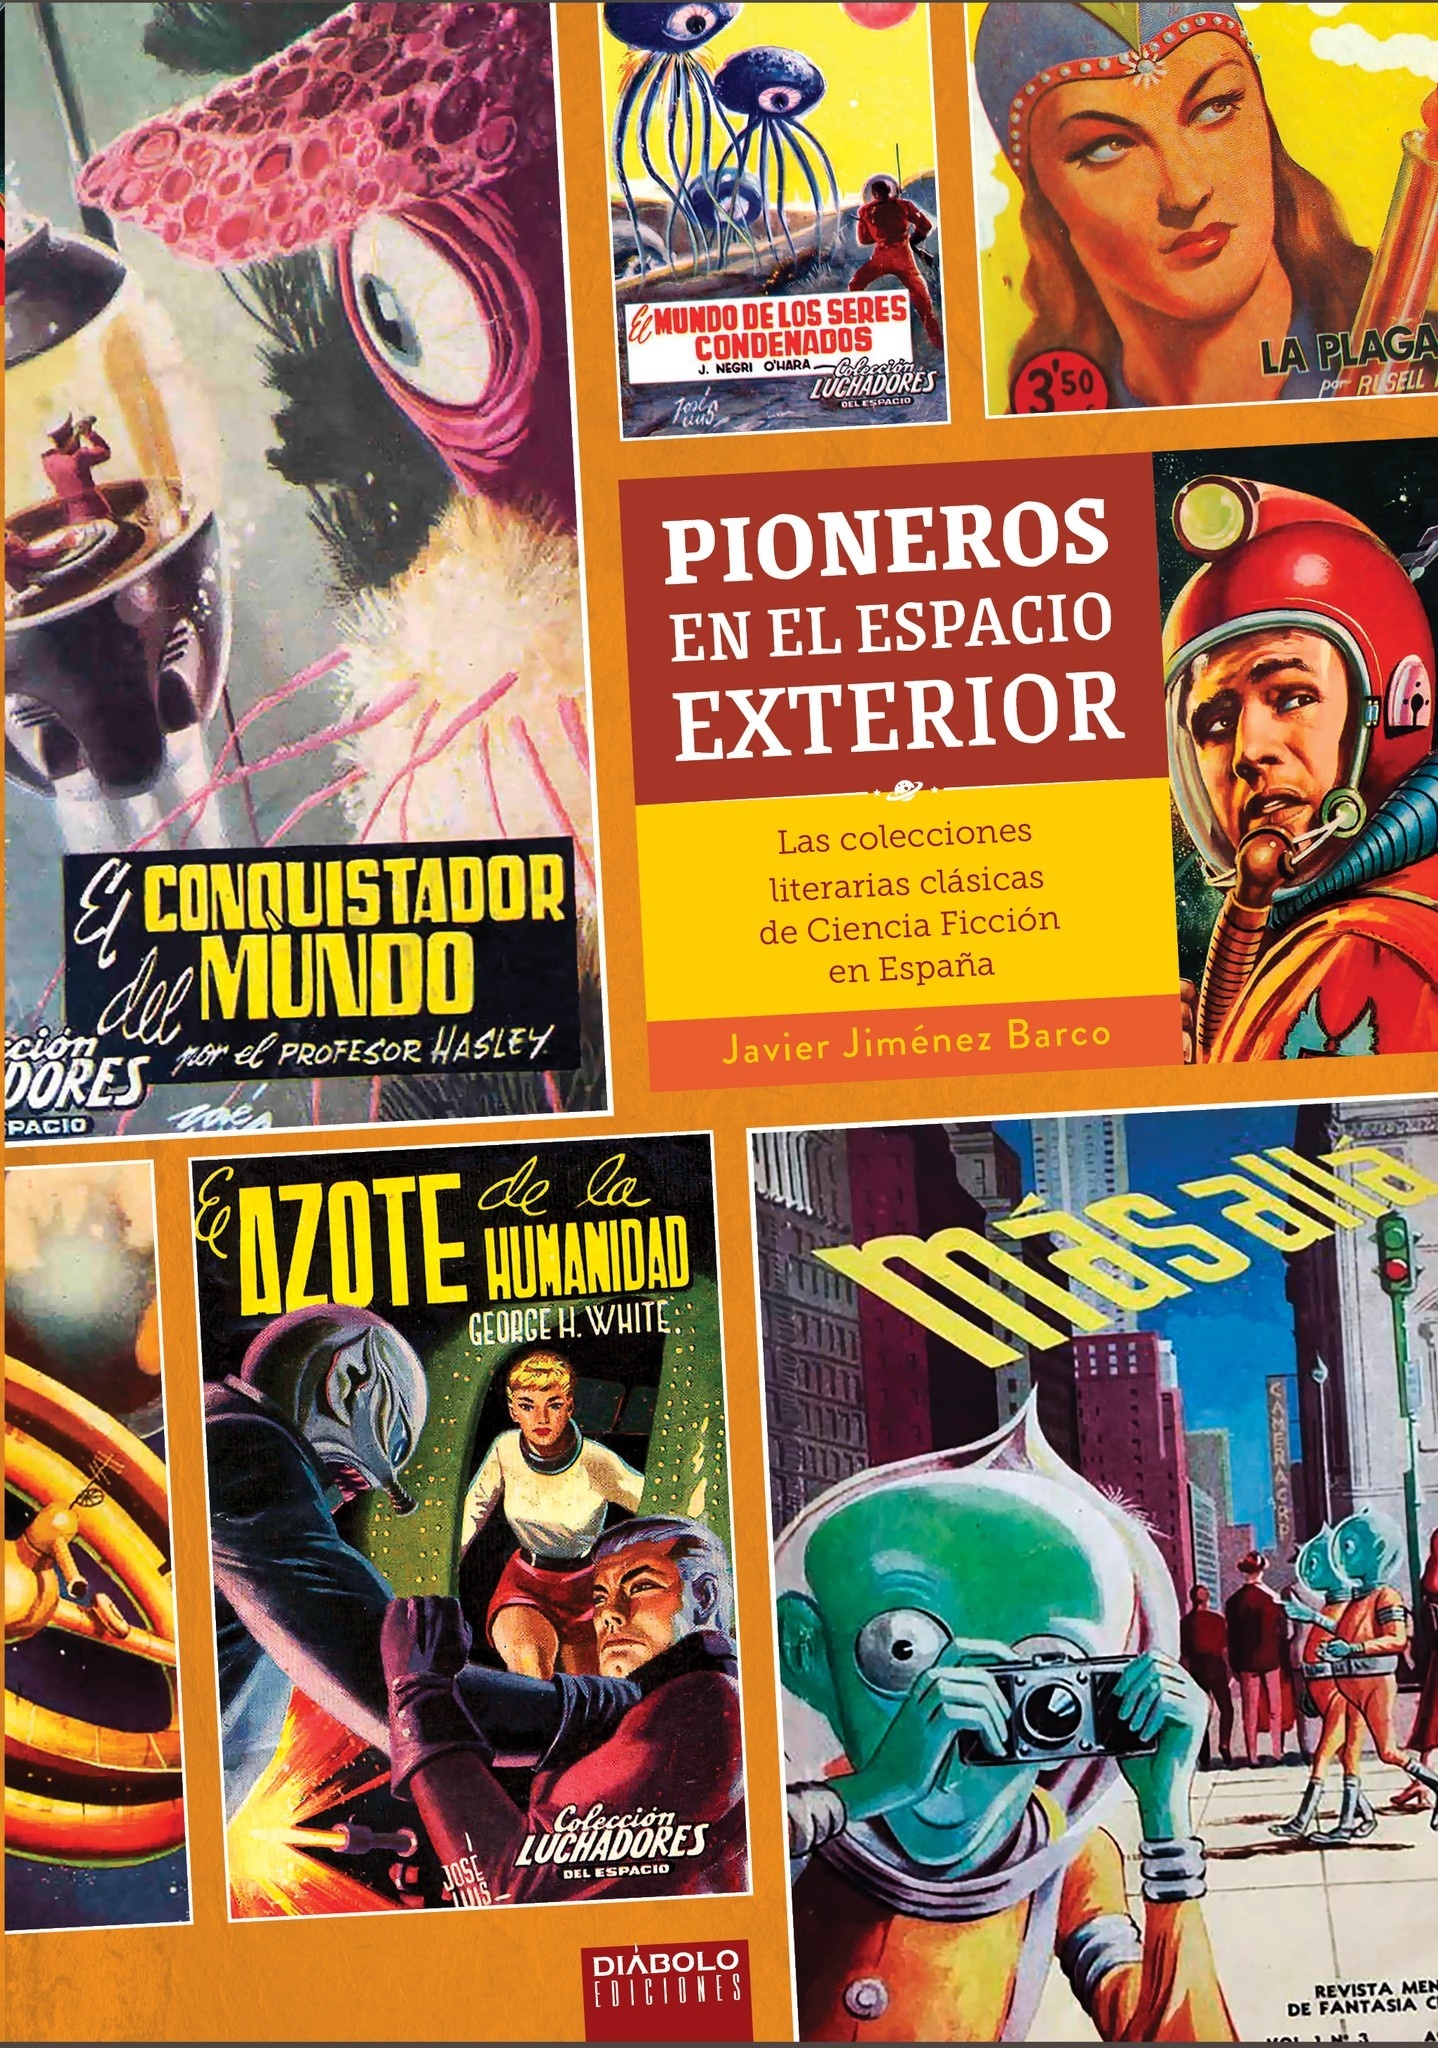 Pioneros en el espacio exterior "Las colecciones literarias clásicas de ciencia ficción en España". 